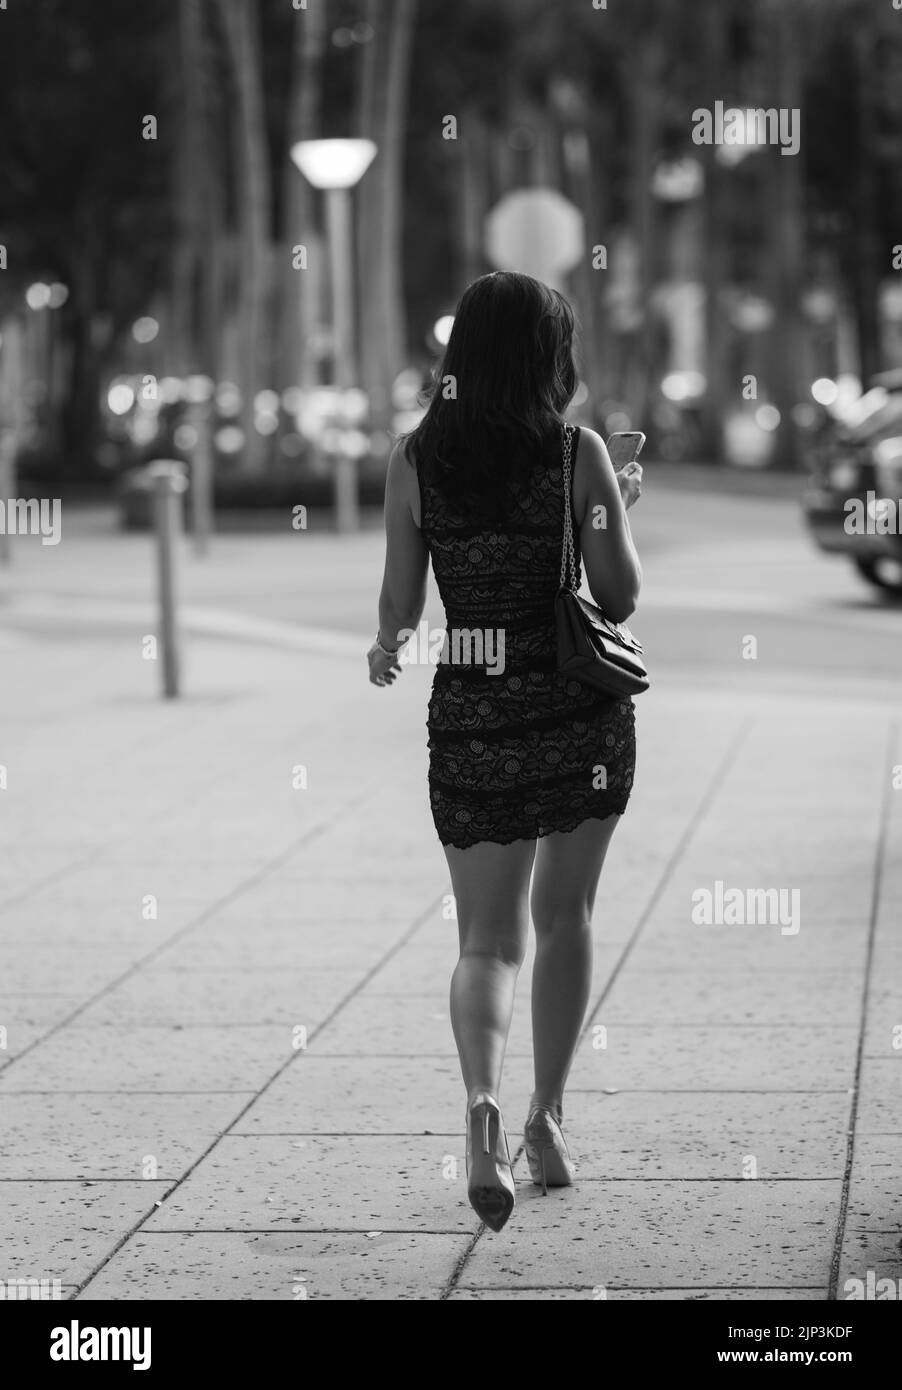 Une échelle de gris d'une jolie femme marchant dans la rue Banque D'Images